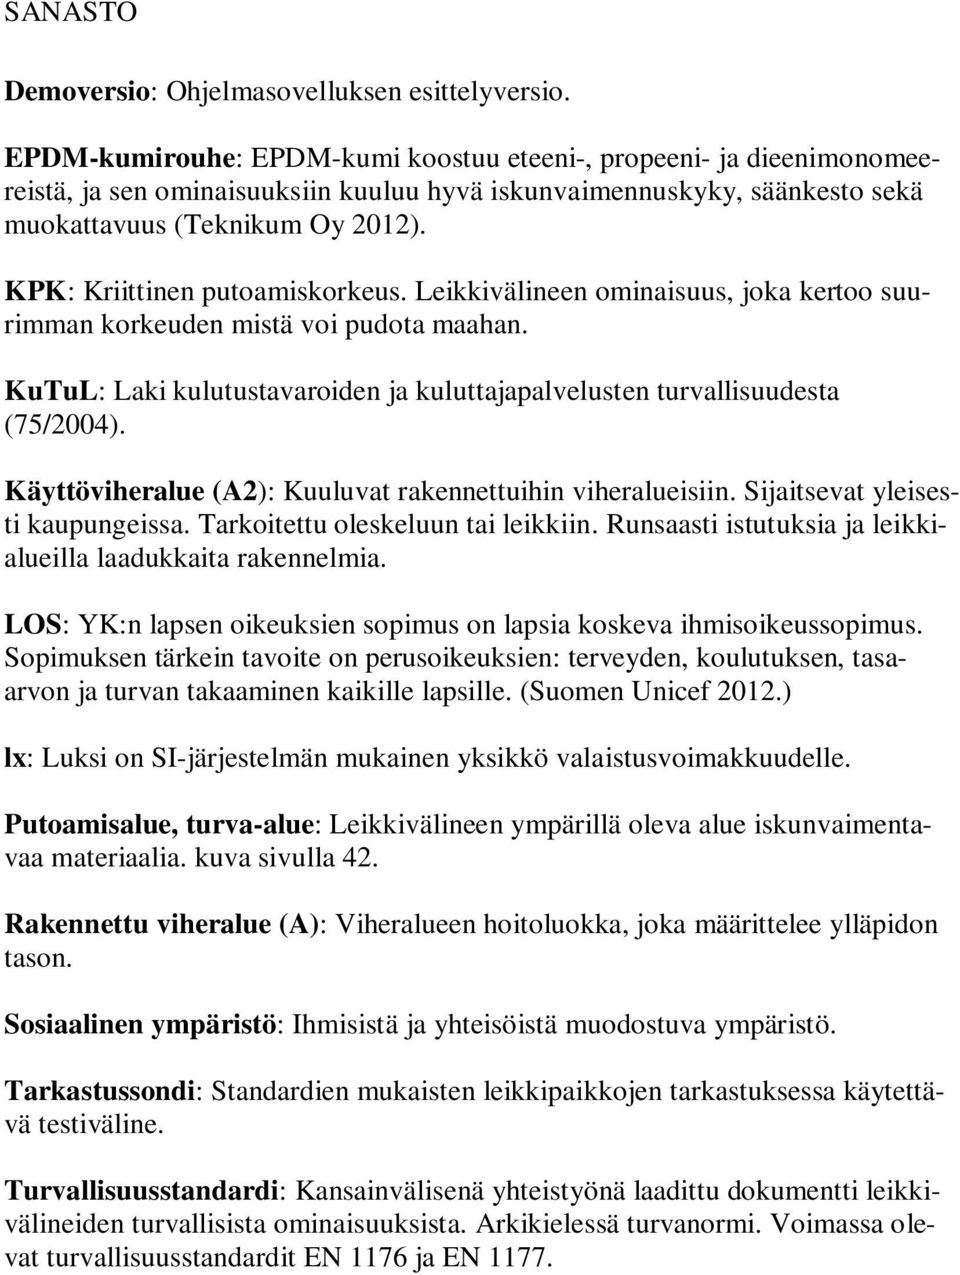 KPK: Kriittinen putoamiskorkeus. Leikkivälineen ominaisuus, joka kertoo suurimman korkeuden mistä voi pudota maahan. KuTuL: Laki kulutustavaroiden ja kuluttajapalvelusten turvallisuudesta (75/2004).